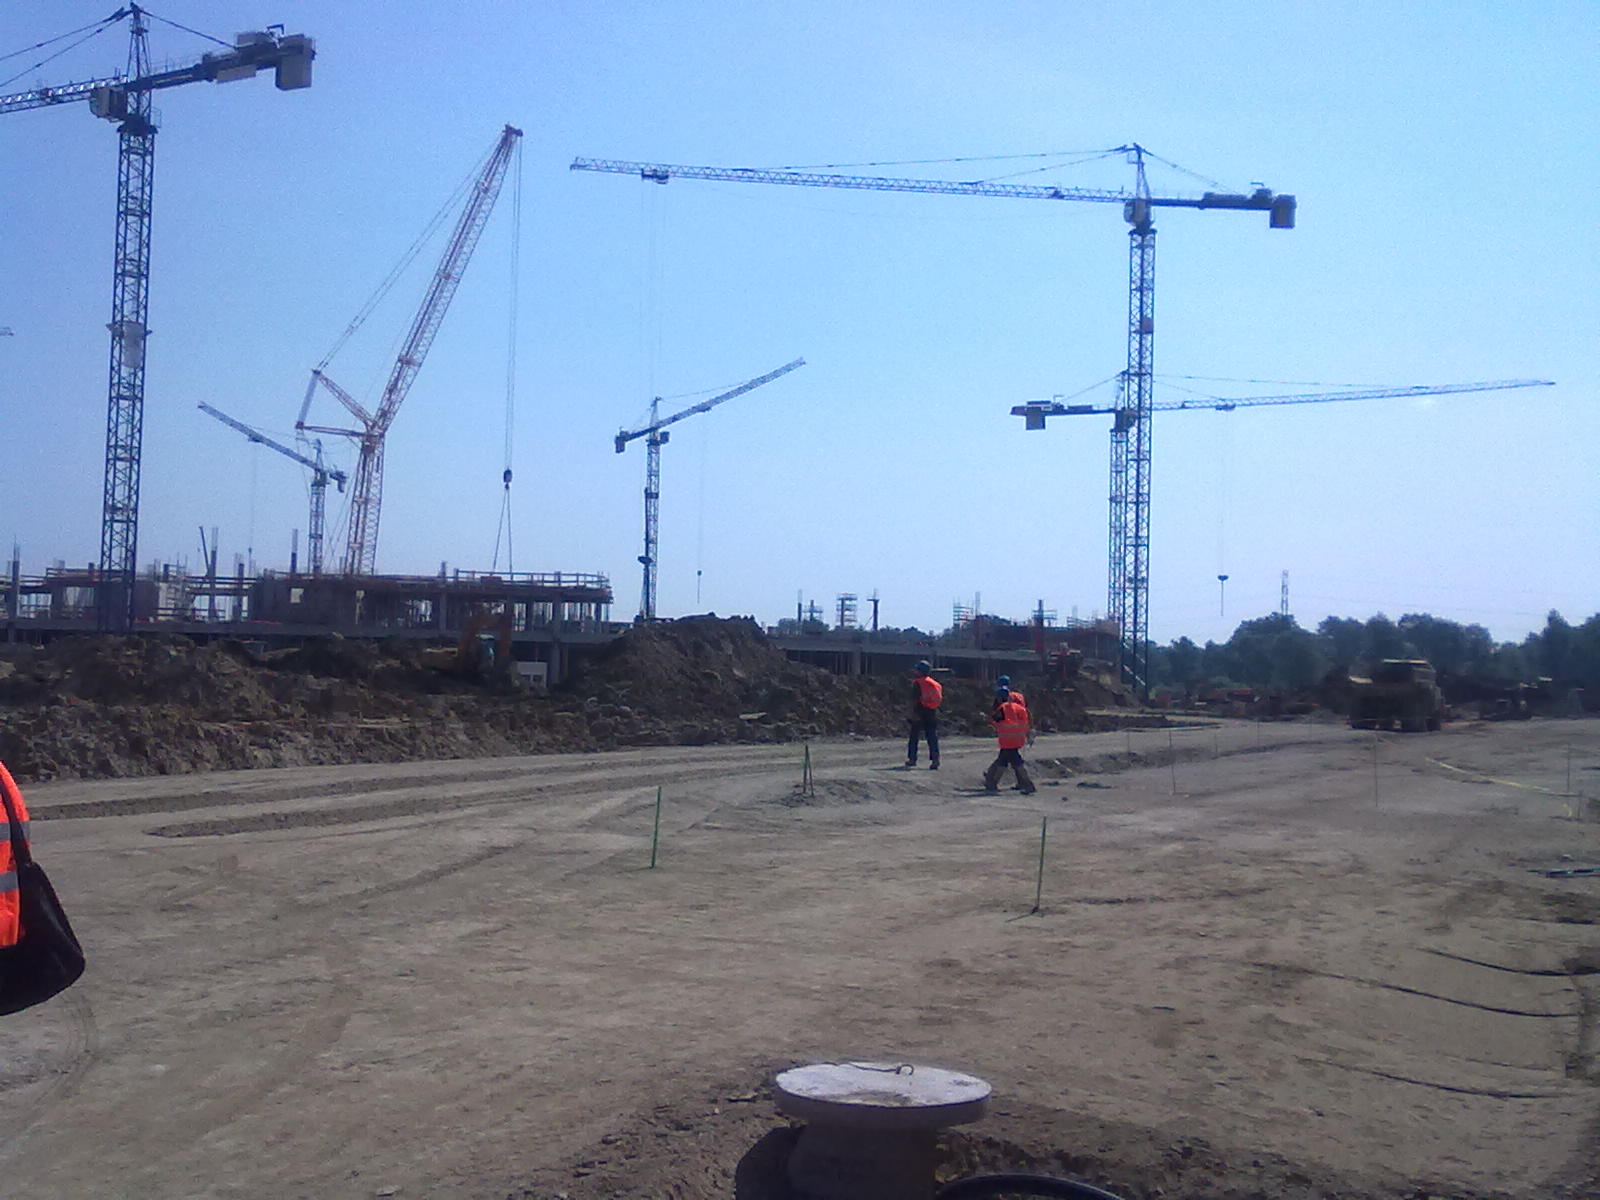 Stadion rośnie w górę (Posłuchaj i zobacz) - Plac budowy stadionu (Fot. Sylwia Jurgiel)